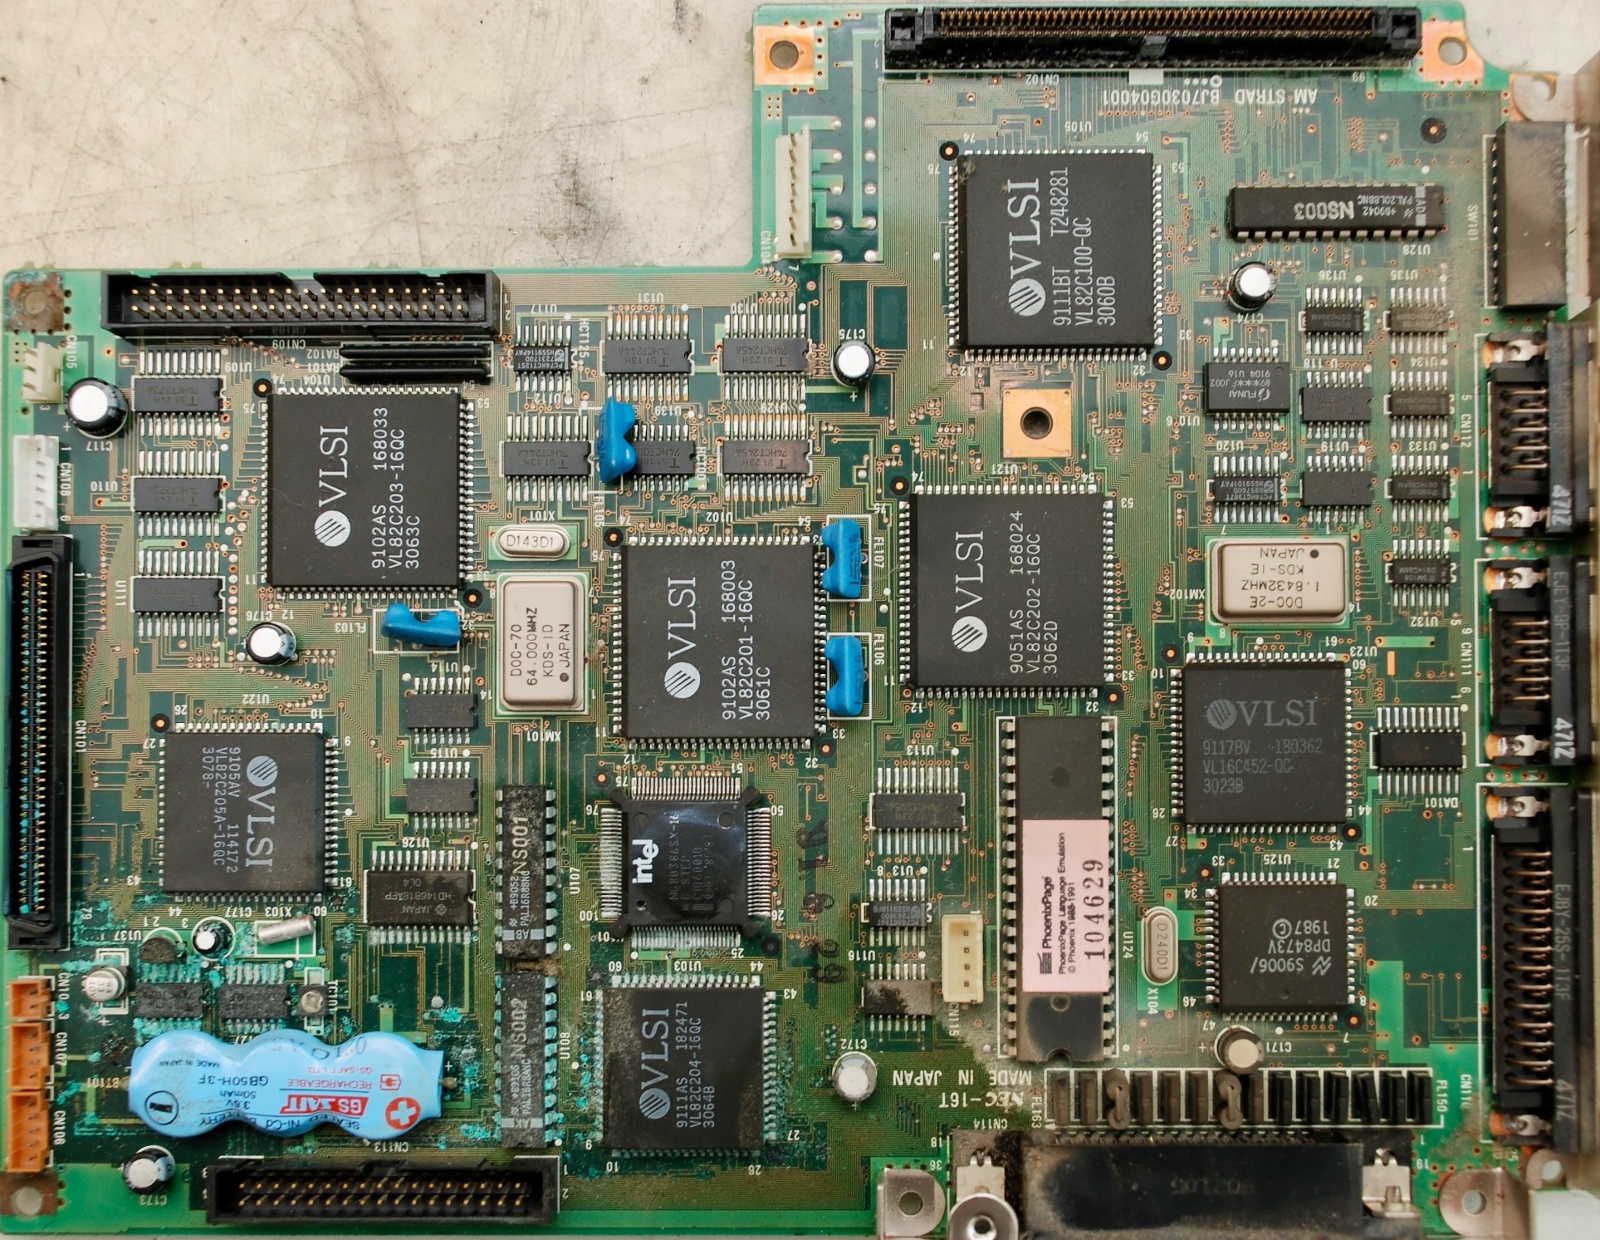 7 килограммов портативности, или ноутбук Amstrad ALT-386SX из 1988 года. Часть 2 — разбираем убердевайс - 16